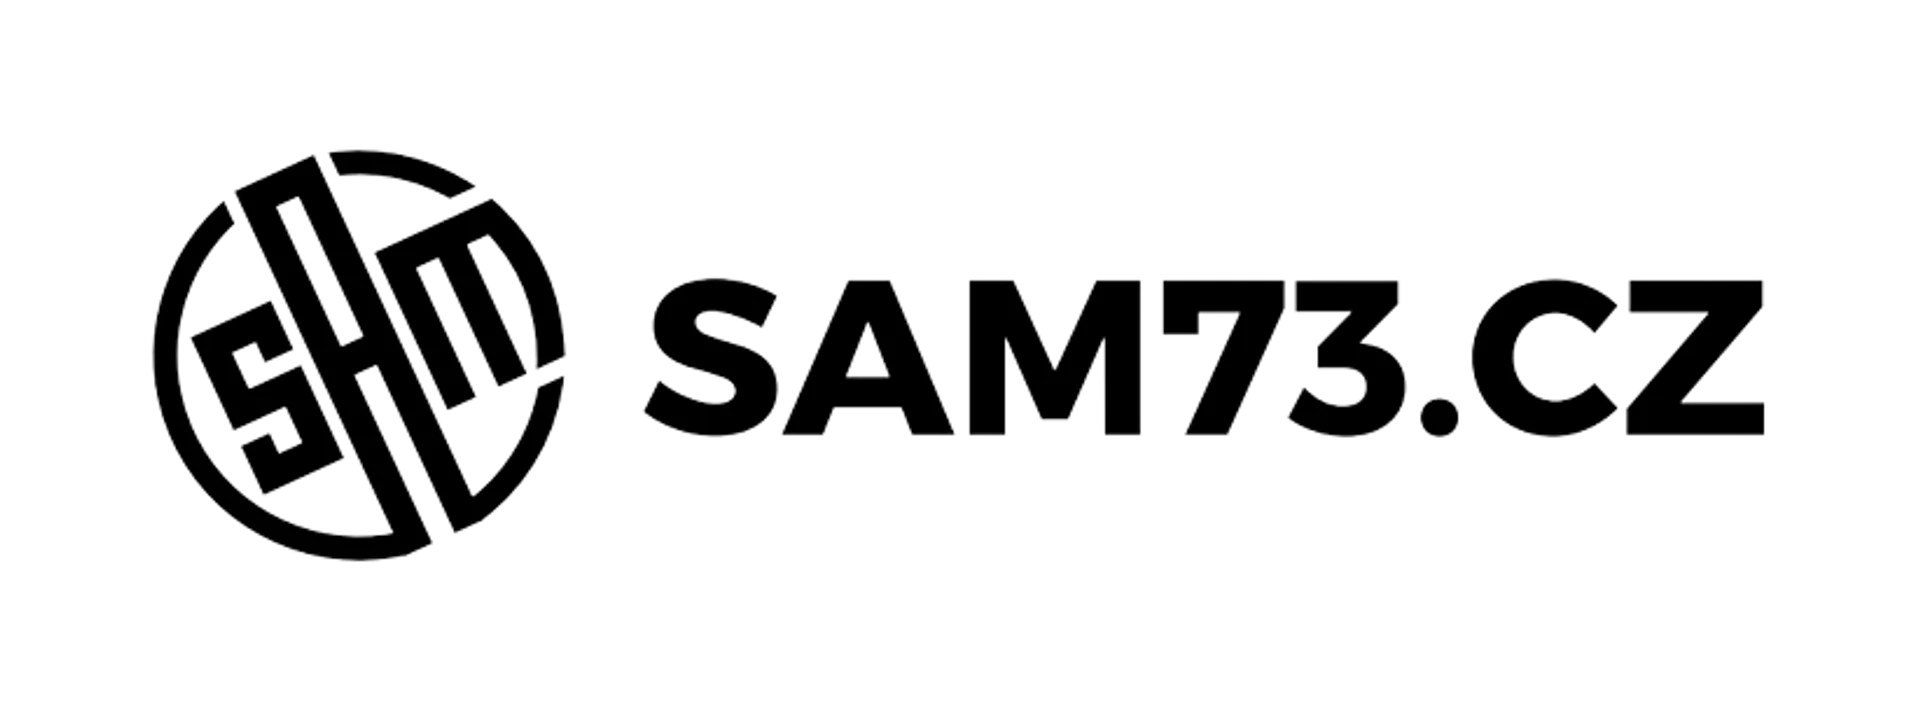 SAM 73 logo of current flyer